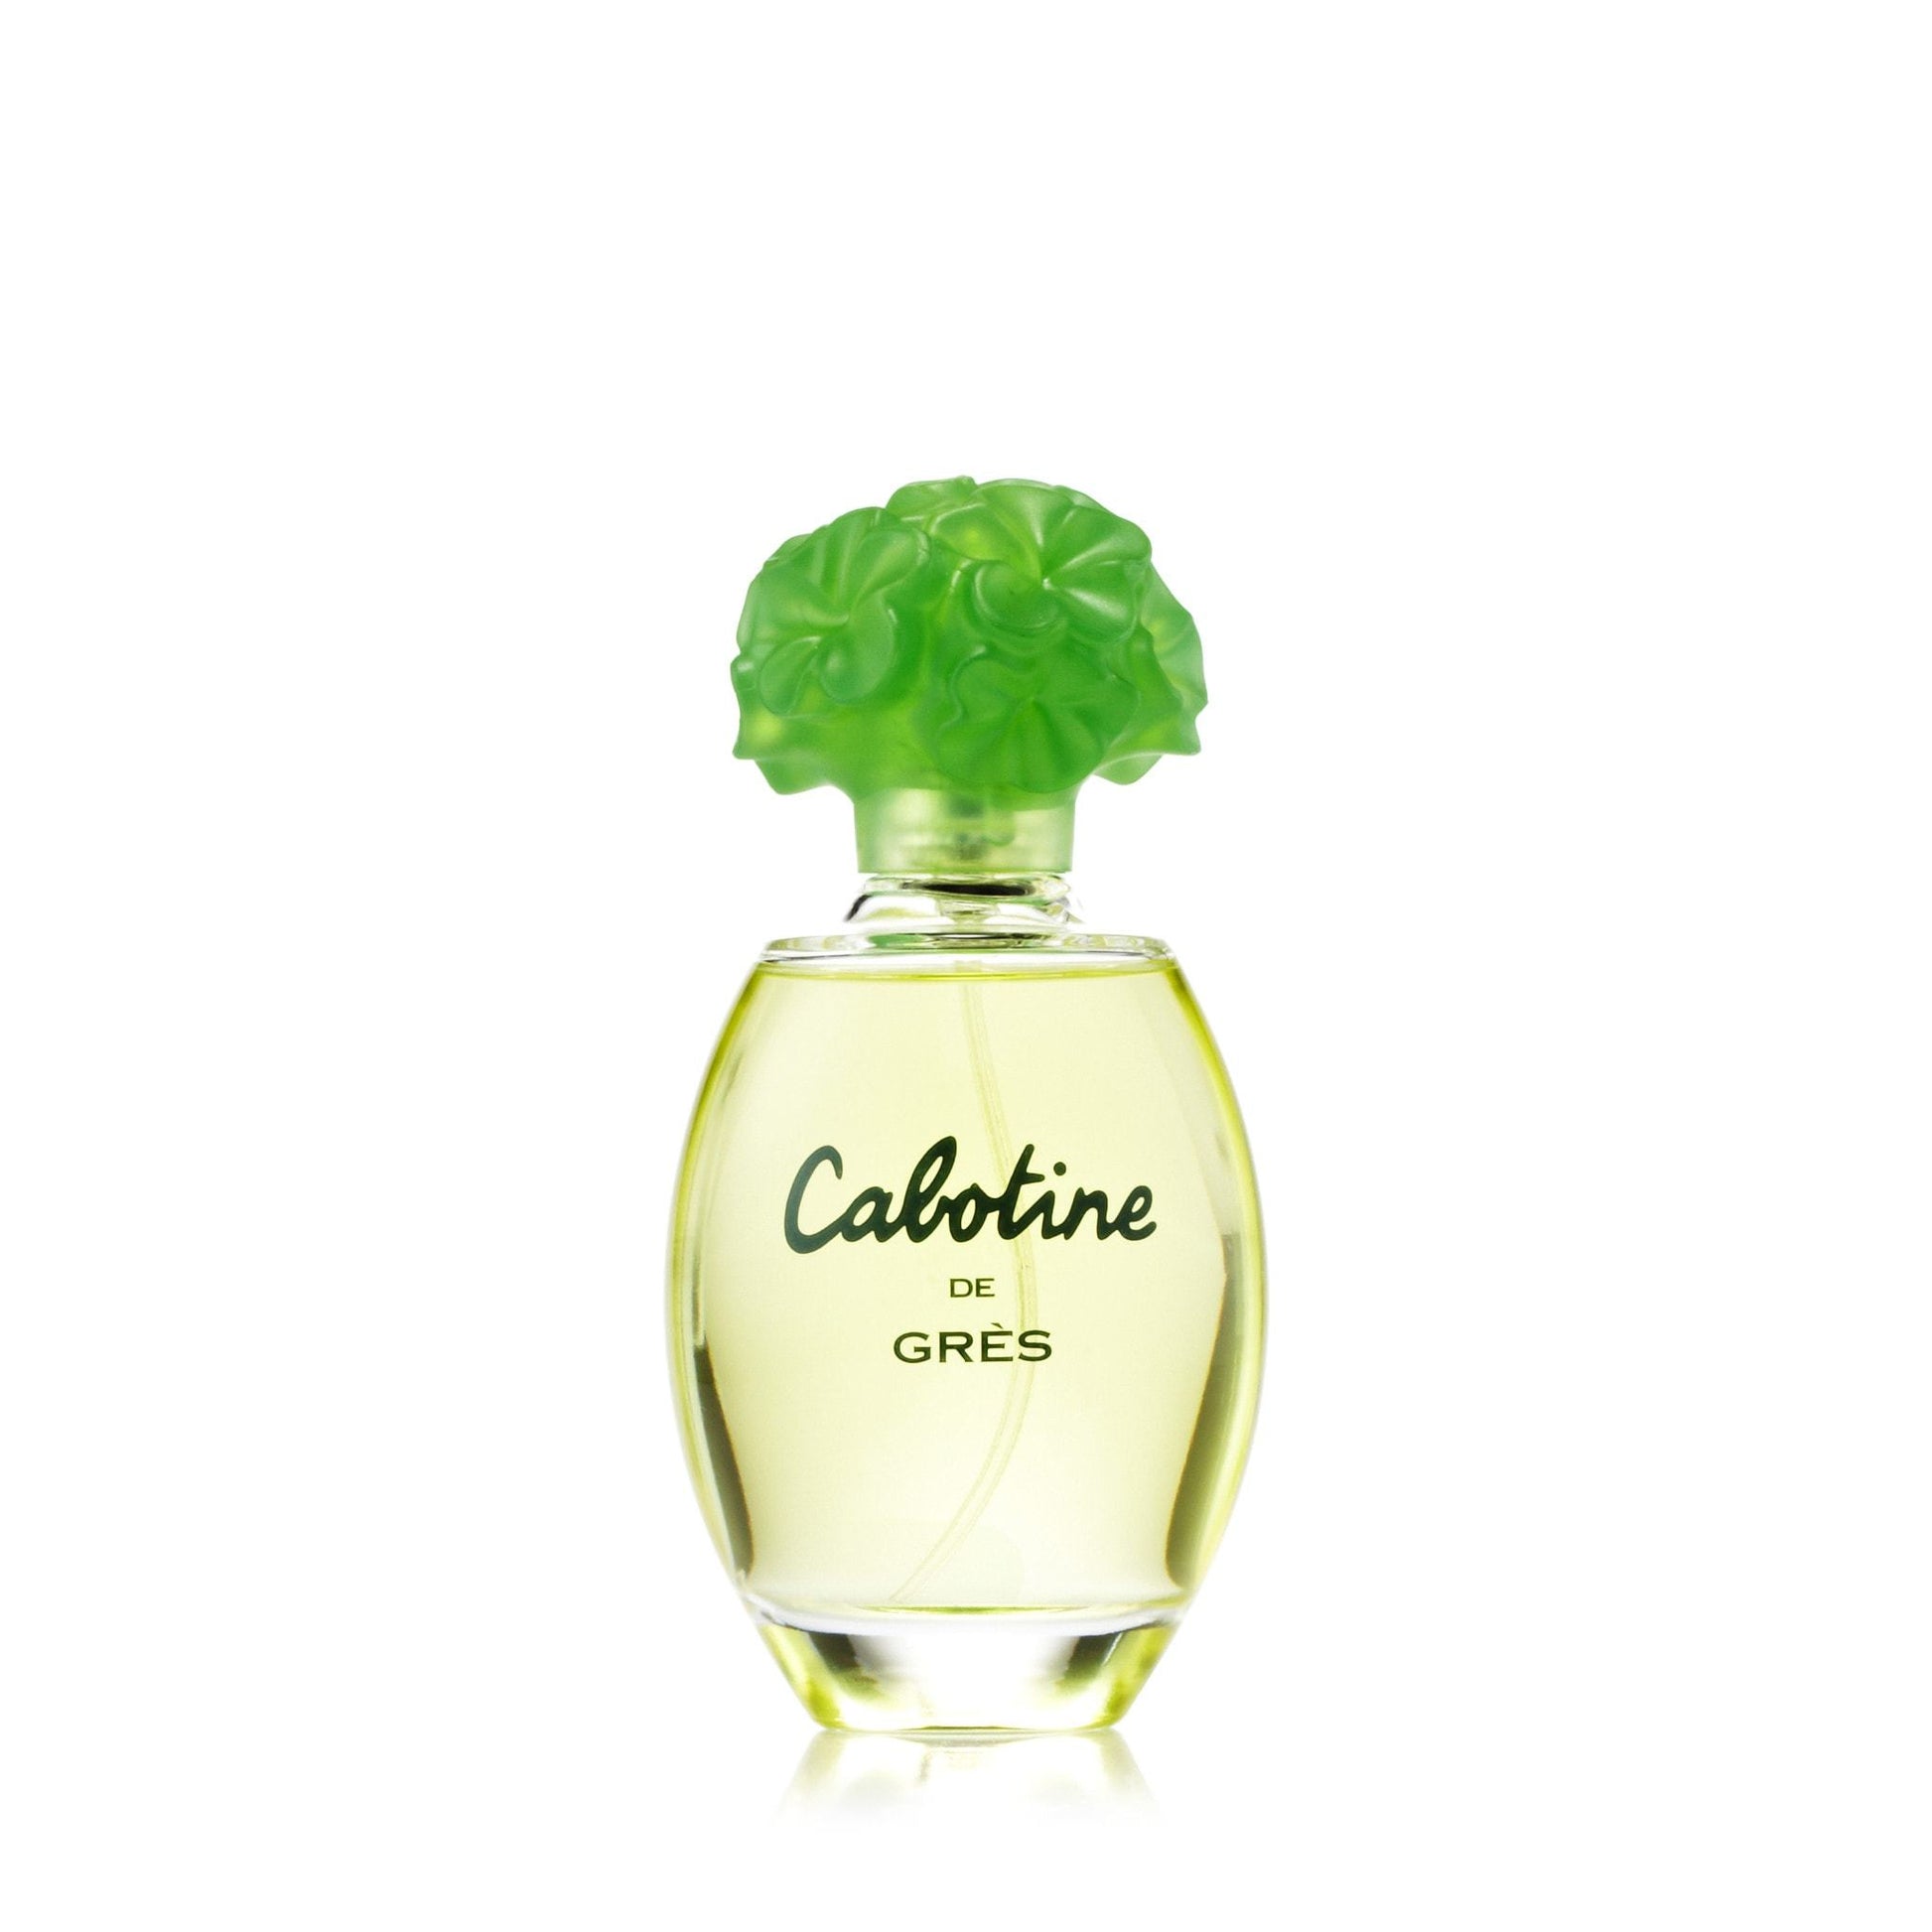 Cabotine Eau de Toilette Spray for Women by Parfums Gres, Product image 1